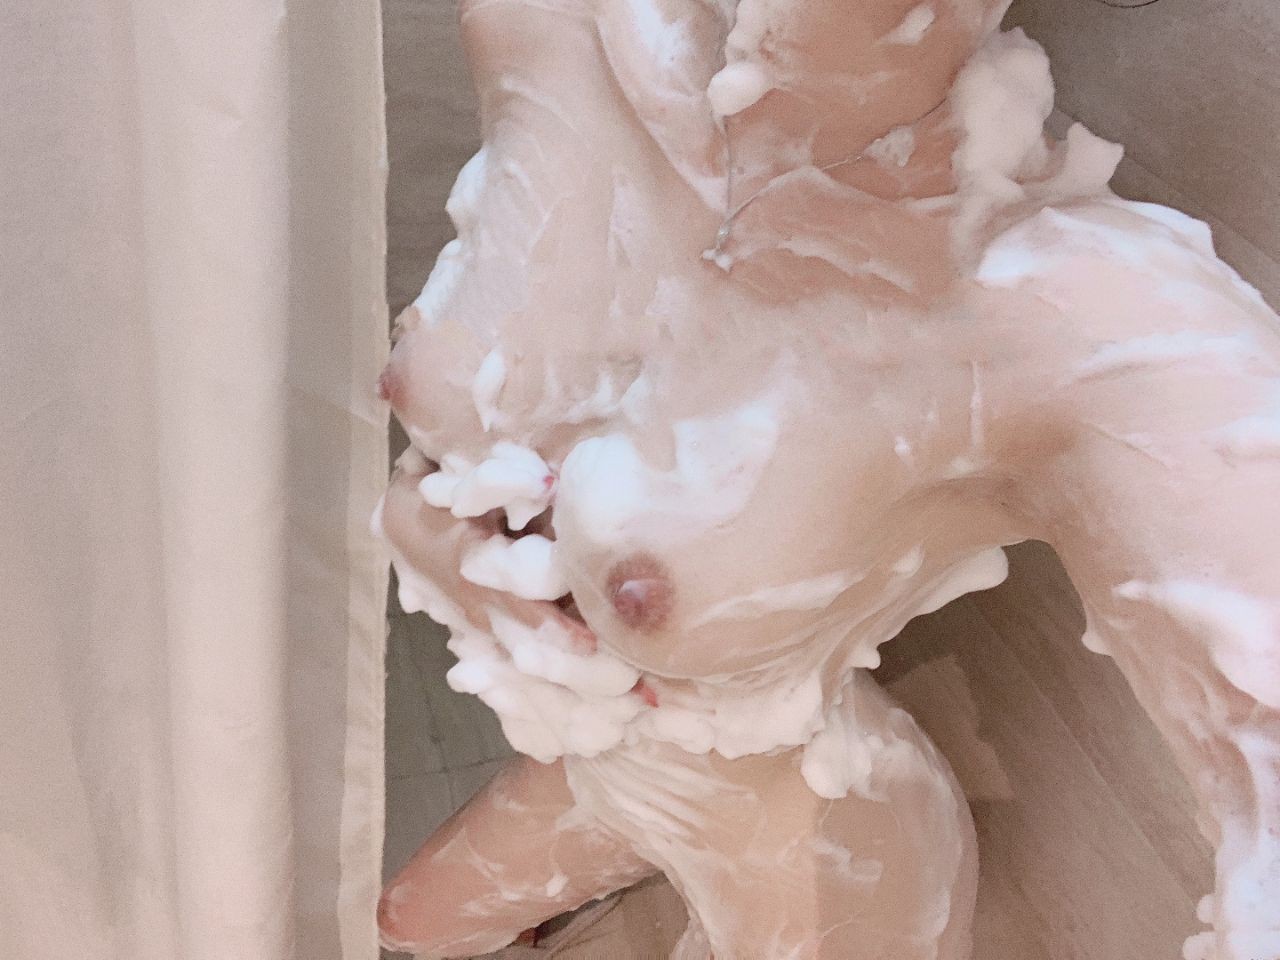 รูปโป๊สาวนมสวย สาวทางบ้านโชว์นมสวยๆในห้องน้ำตอนอาบน้ำนมโคตรใหญ่